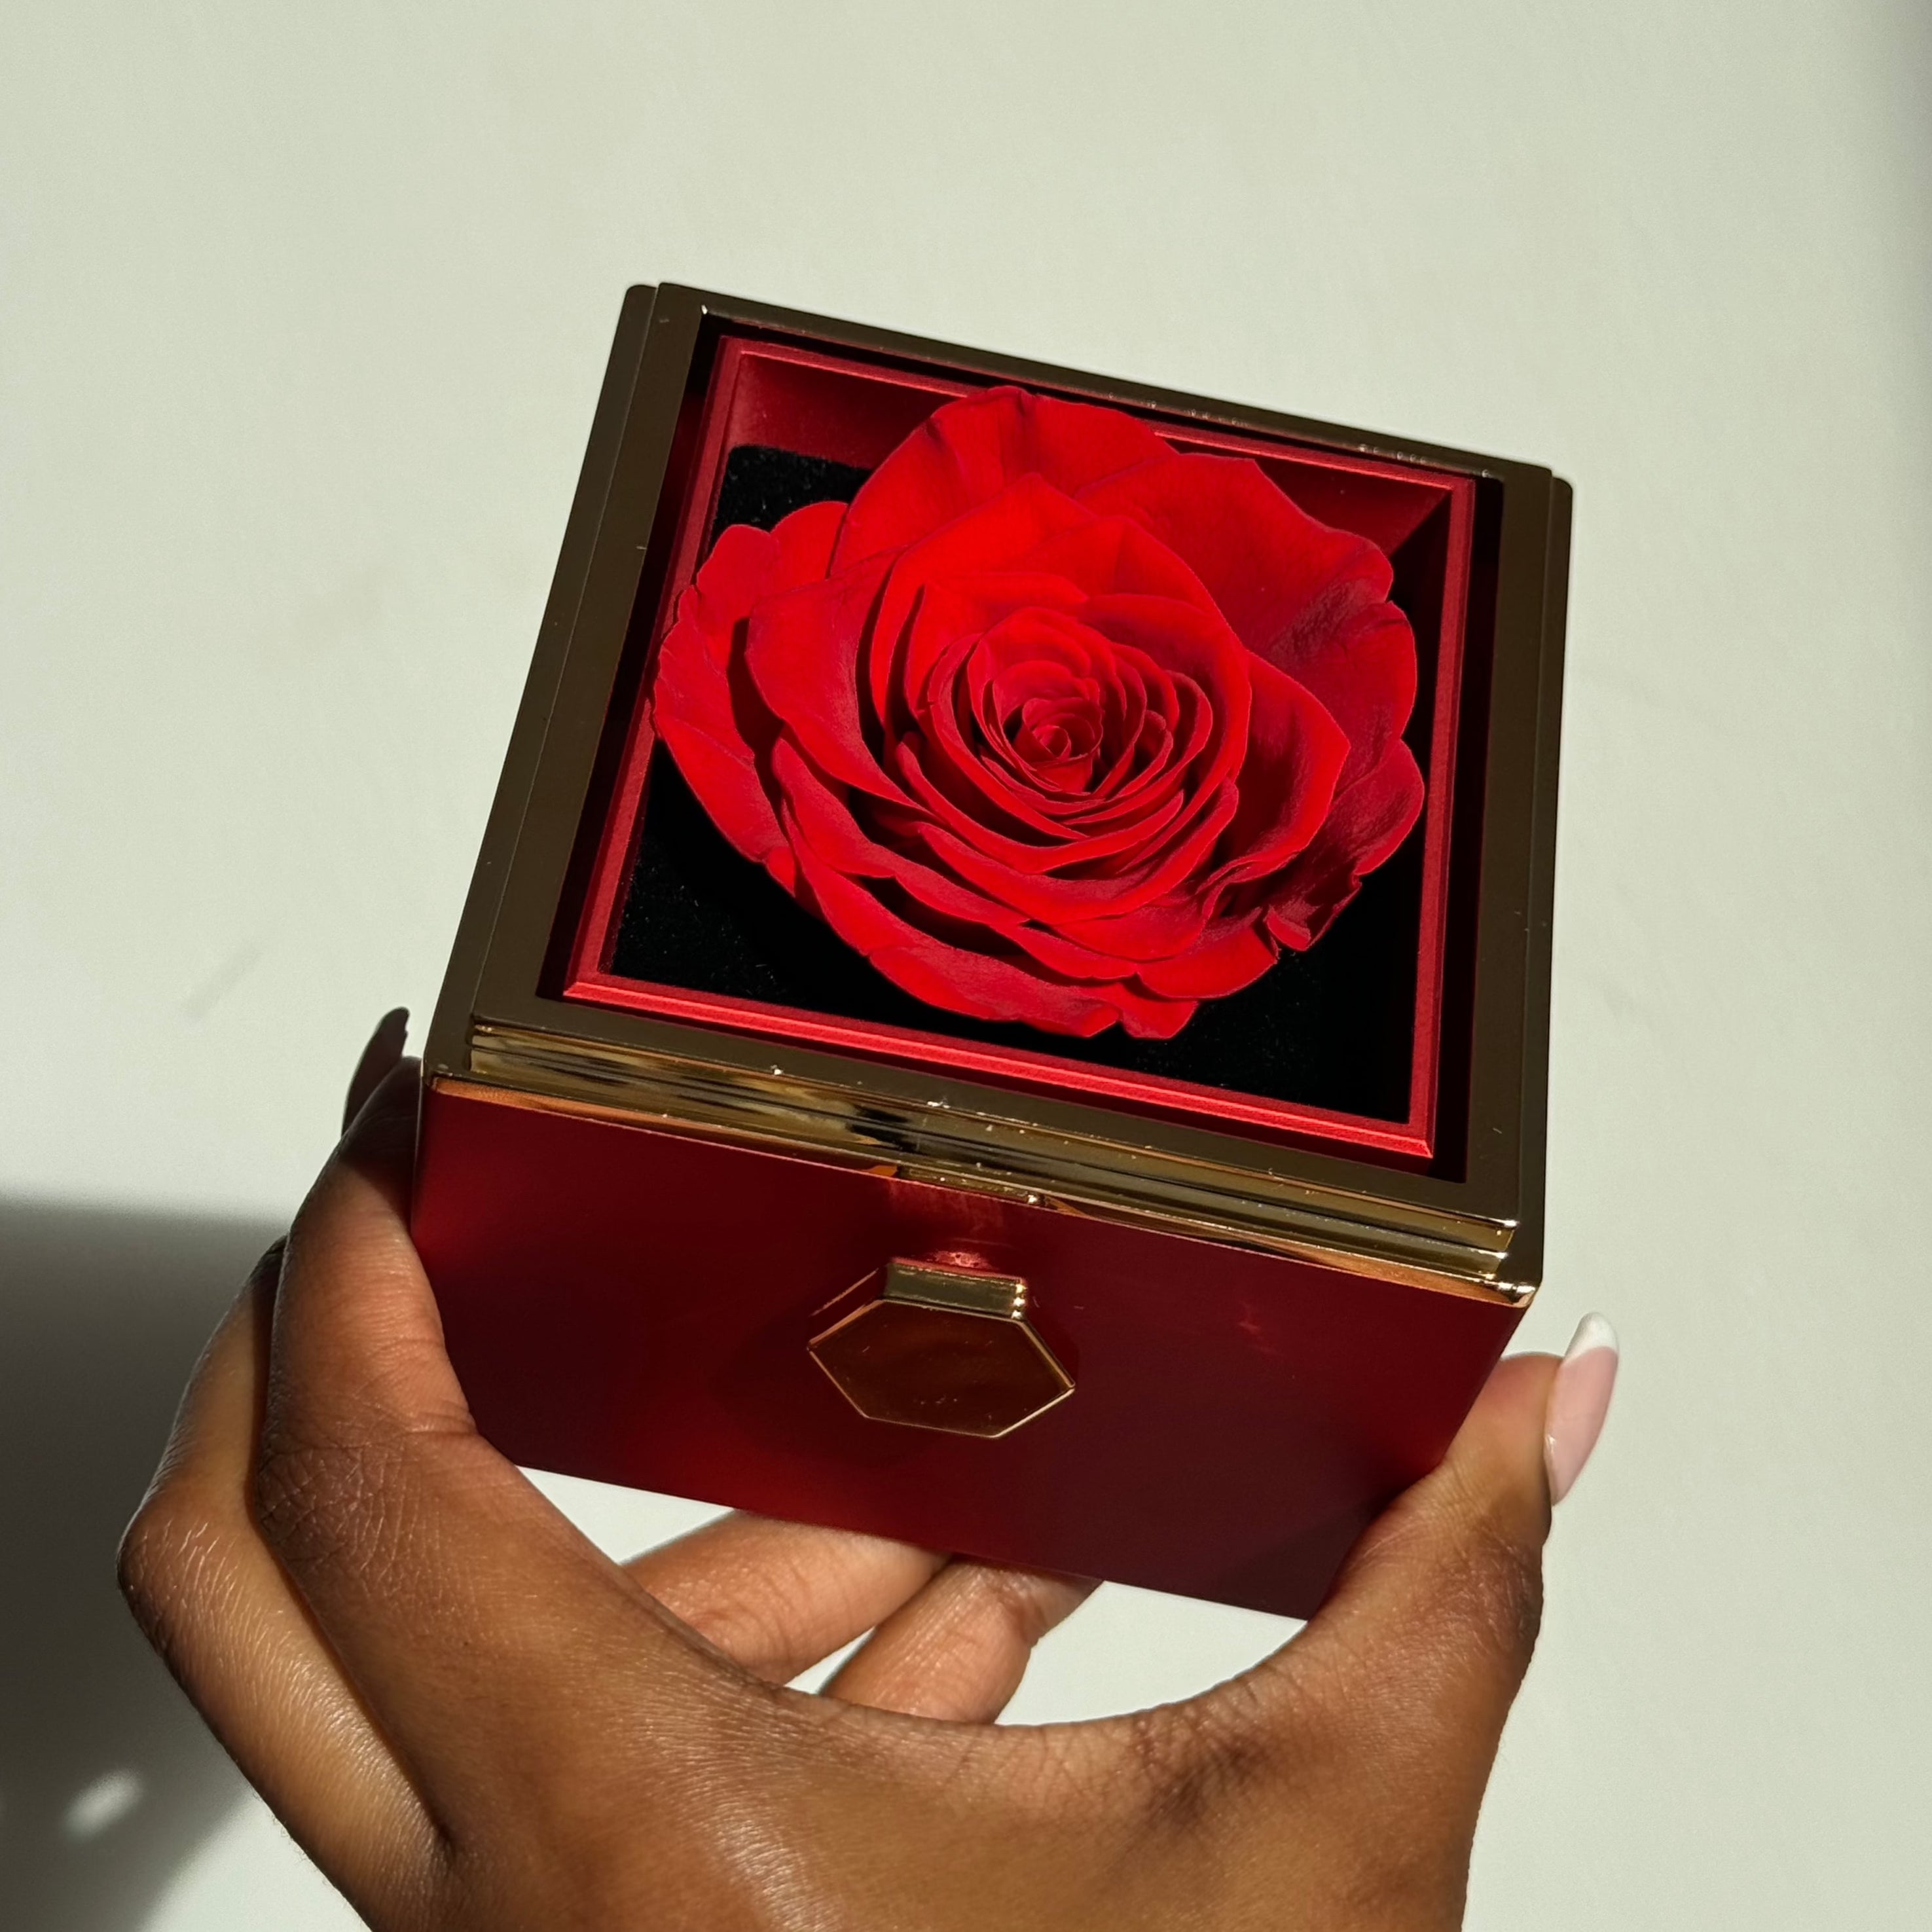 Forever Rose Gift Box